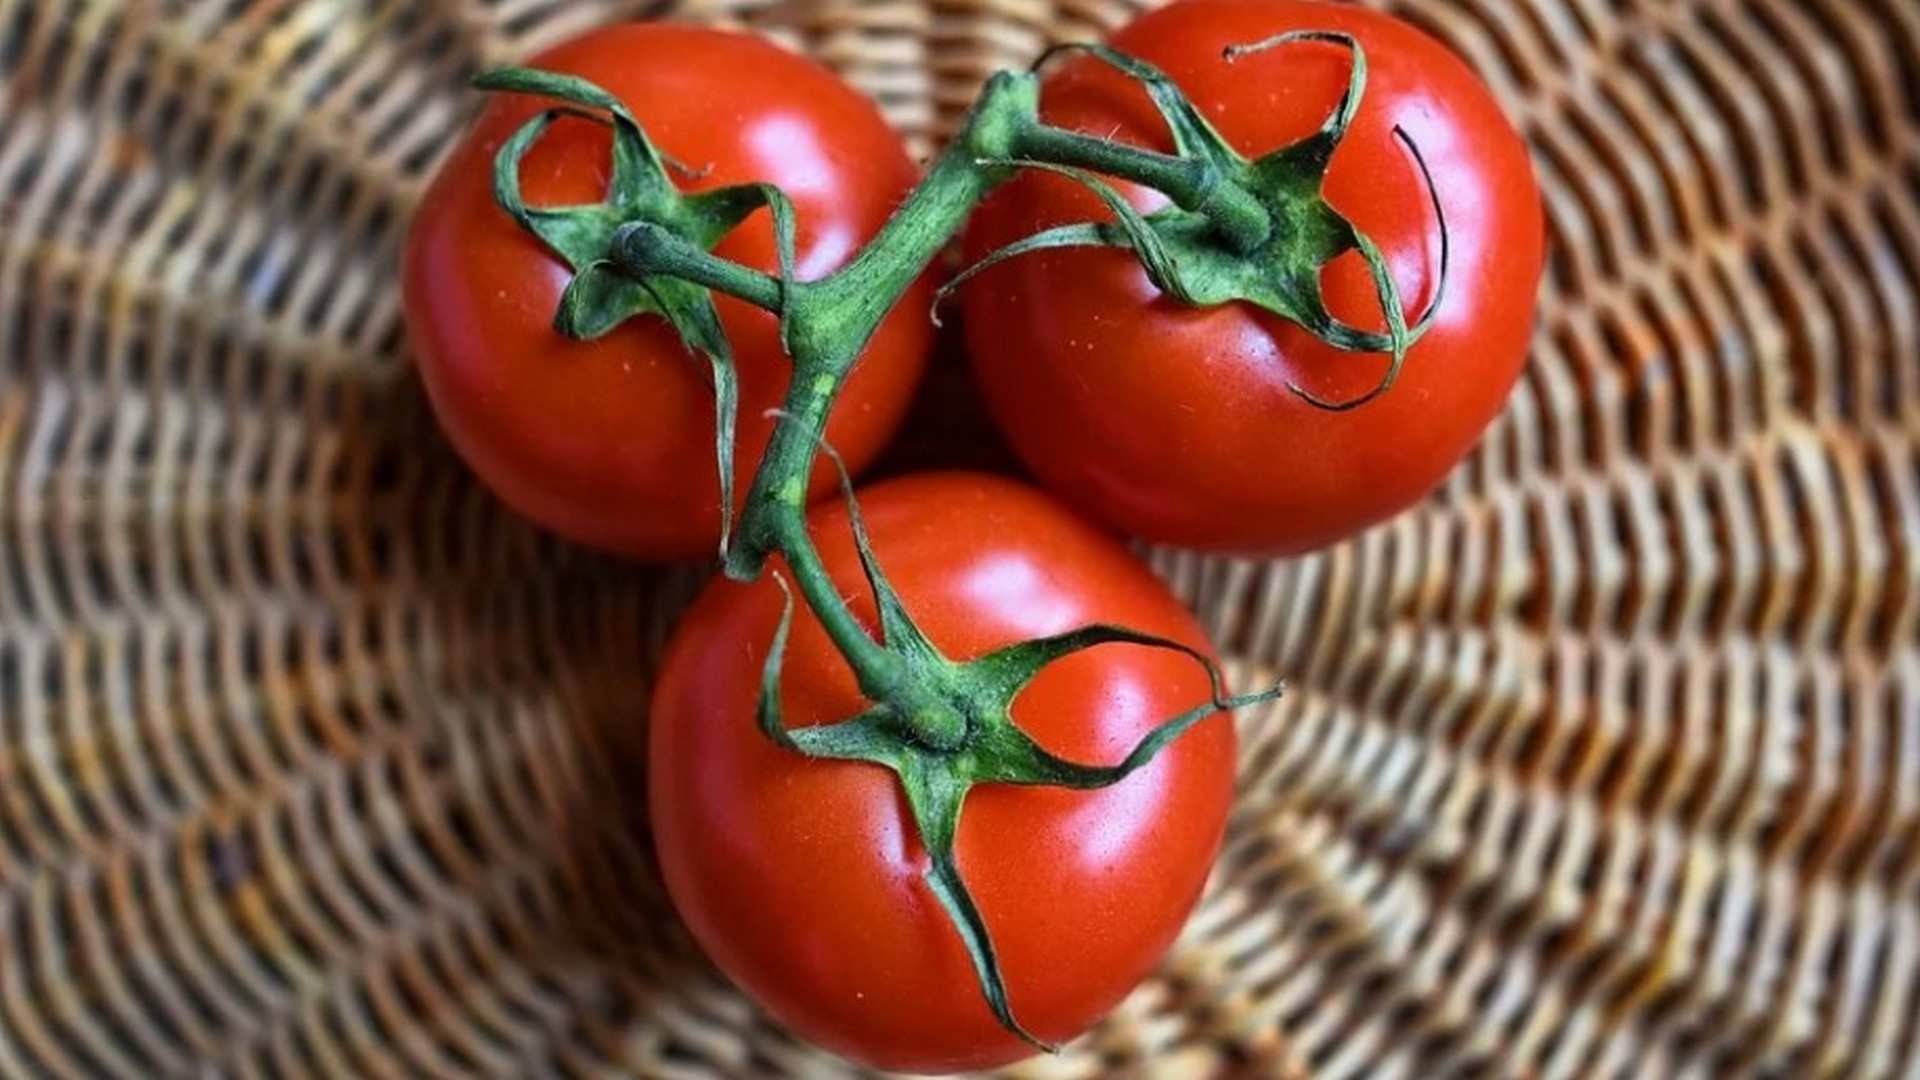 El tomate es un gran antioxidante y se asocia con la protección ante determinados cánceres.